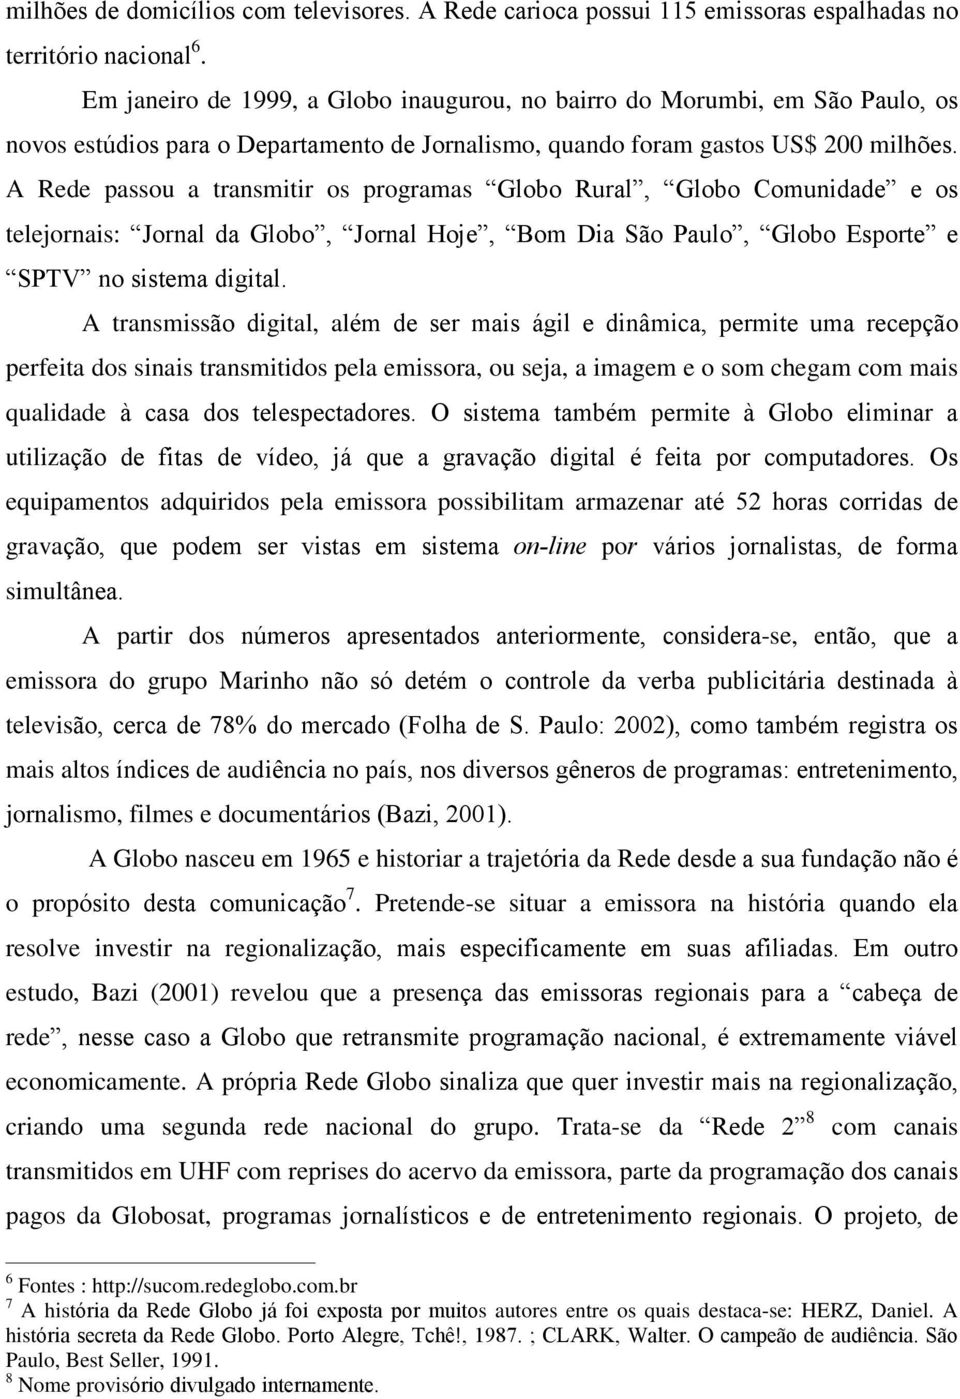 A Rede passou a transmitir os programas Globo Rural, Globo Comunidade e os telejornais: Jornal da Globo, Jornal Hoje, Bom Dia São Paulo, Globo Esporte e SPTV no sistema digital.